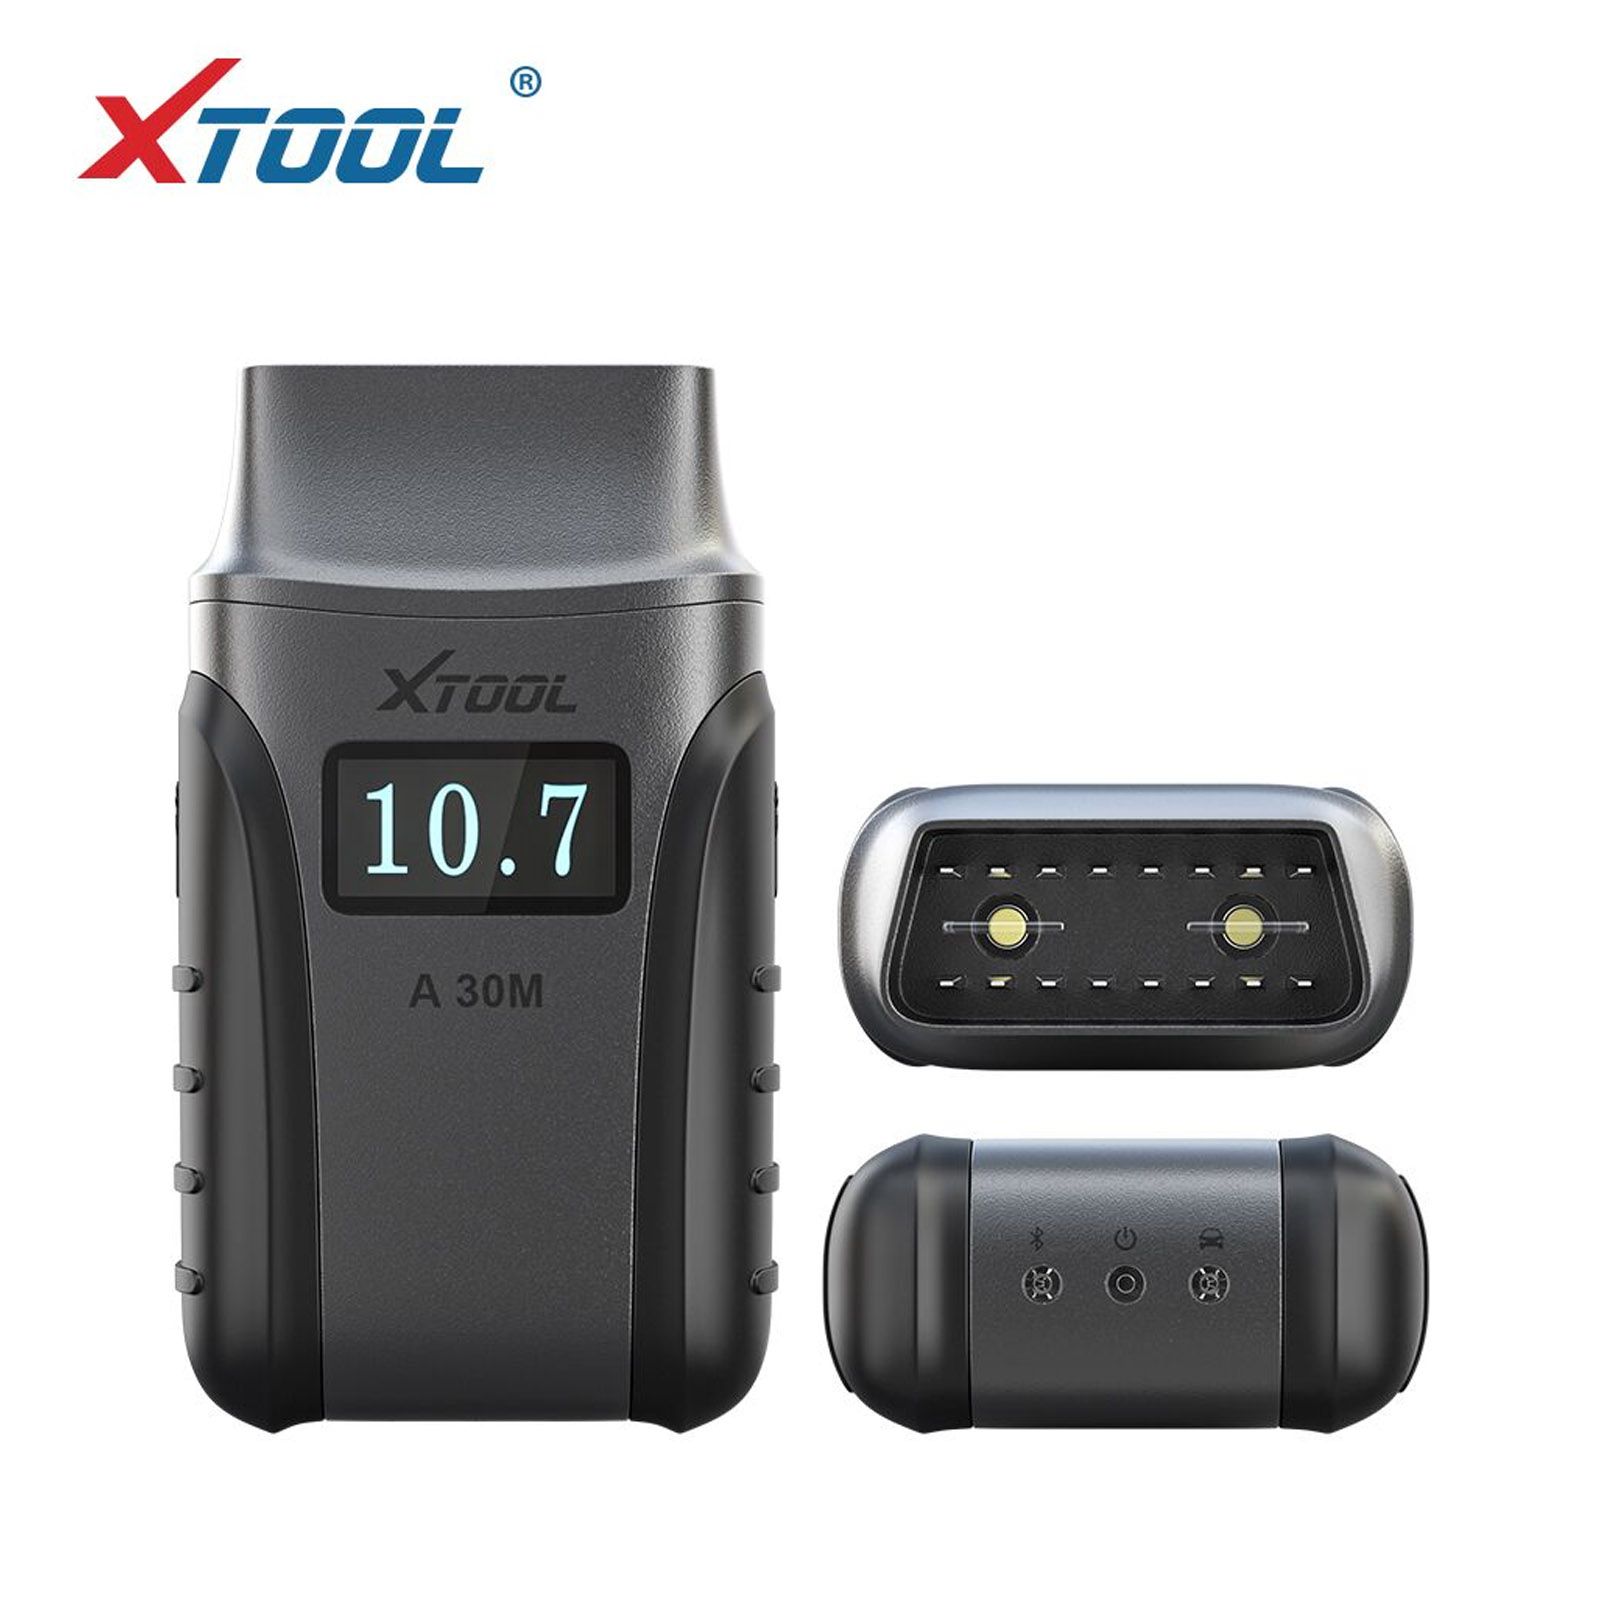 XTOOL A30M OBD2 전체 시스템 진단 도구 Andriod/IOS 자동차 코드 판독기를 위한 양방향 제어 스캐너